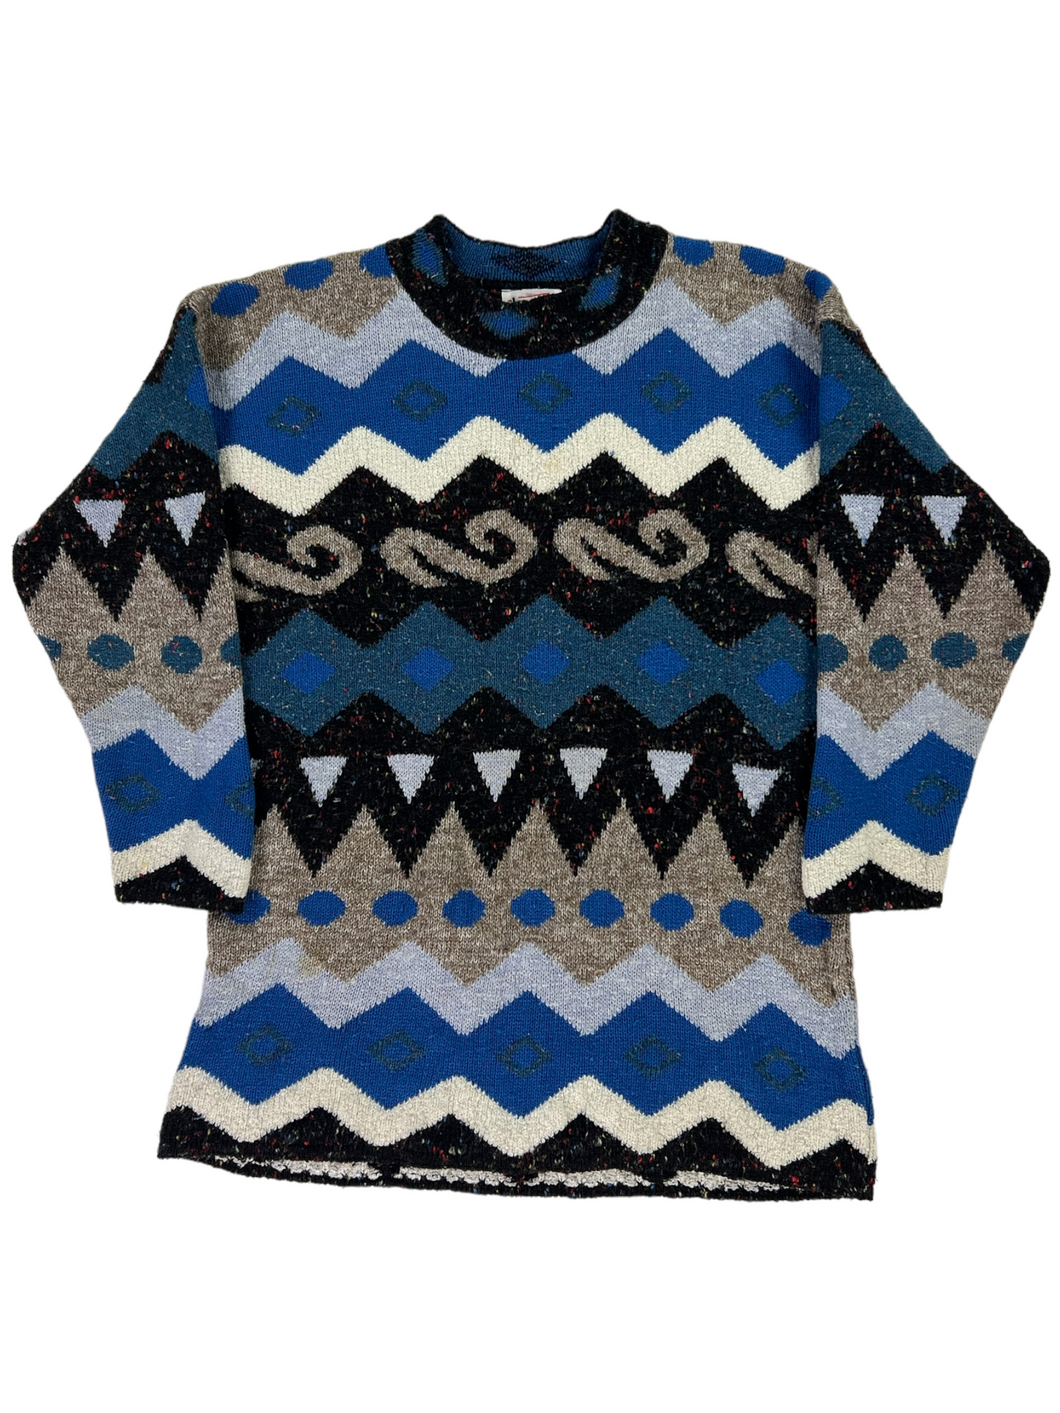 Vintage 90s KEREN geometric women’s sweater (L)